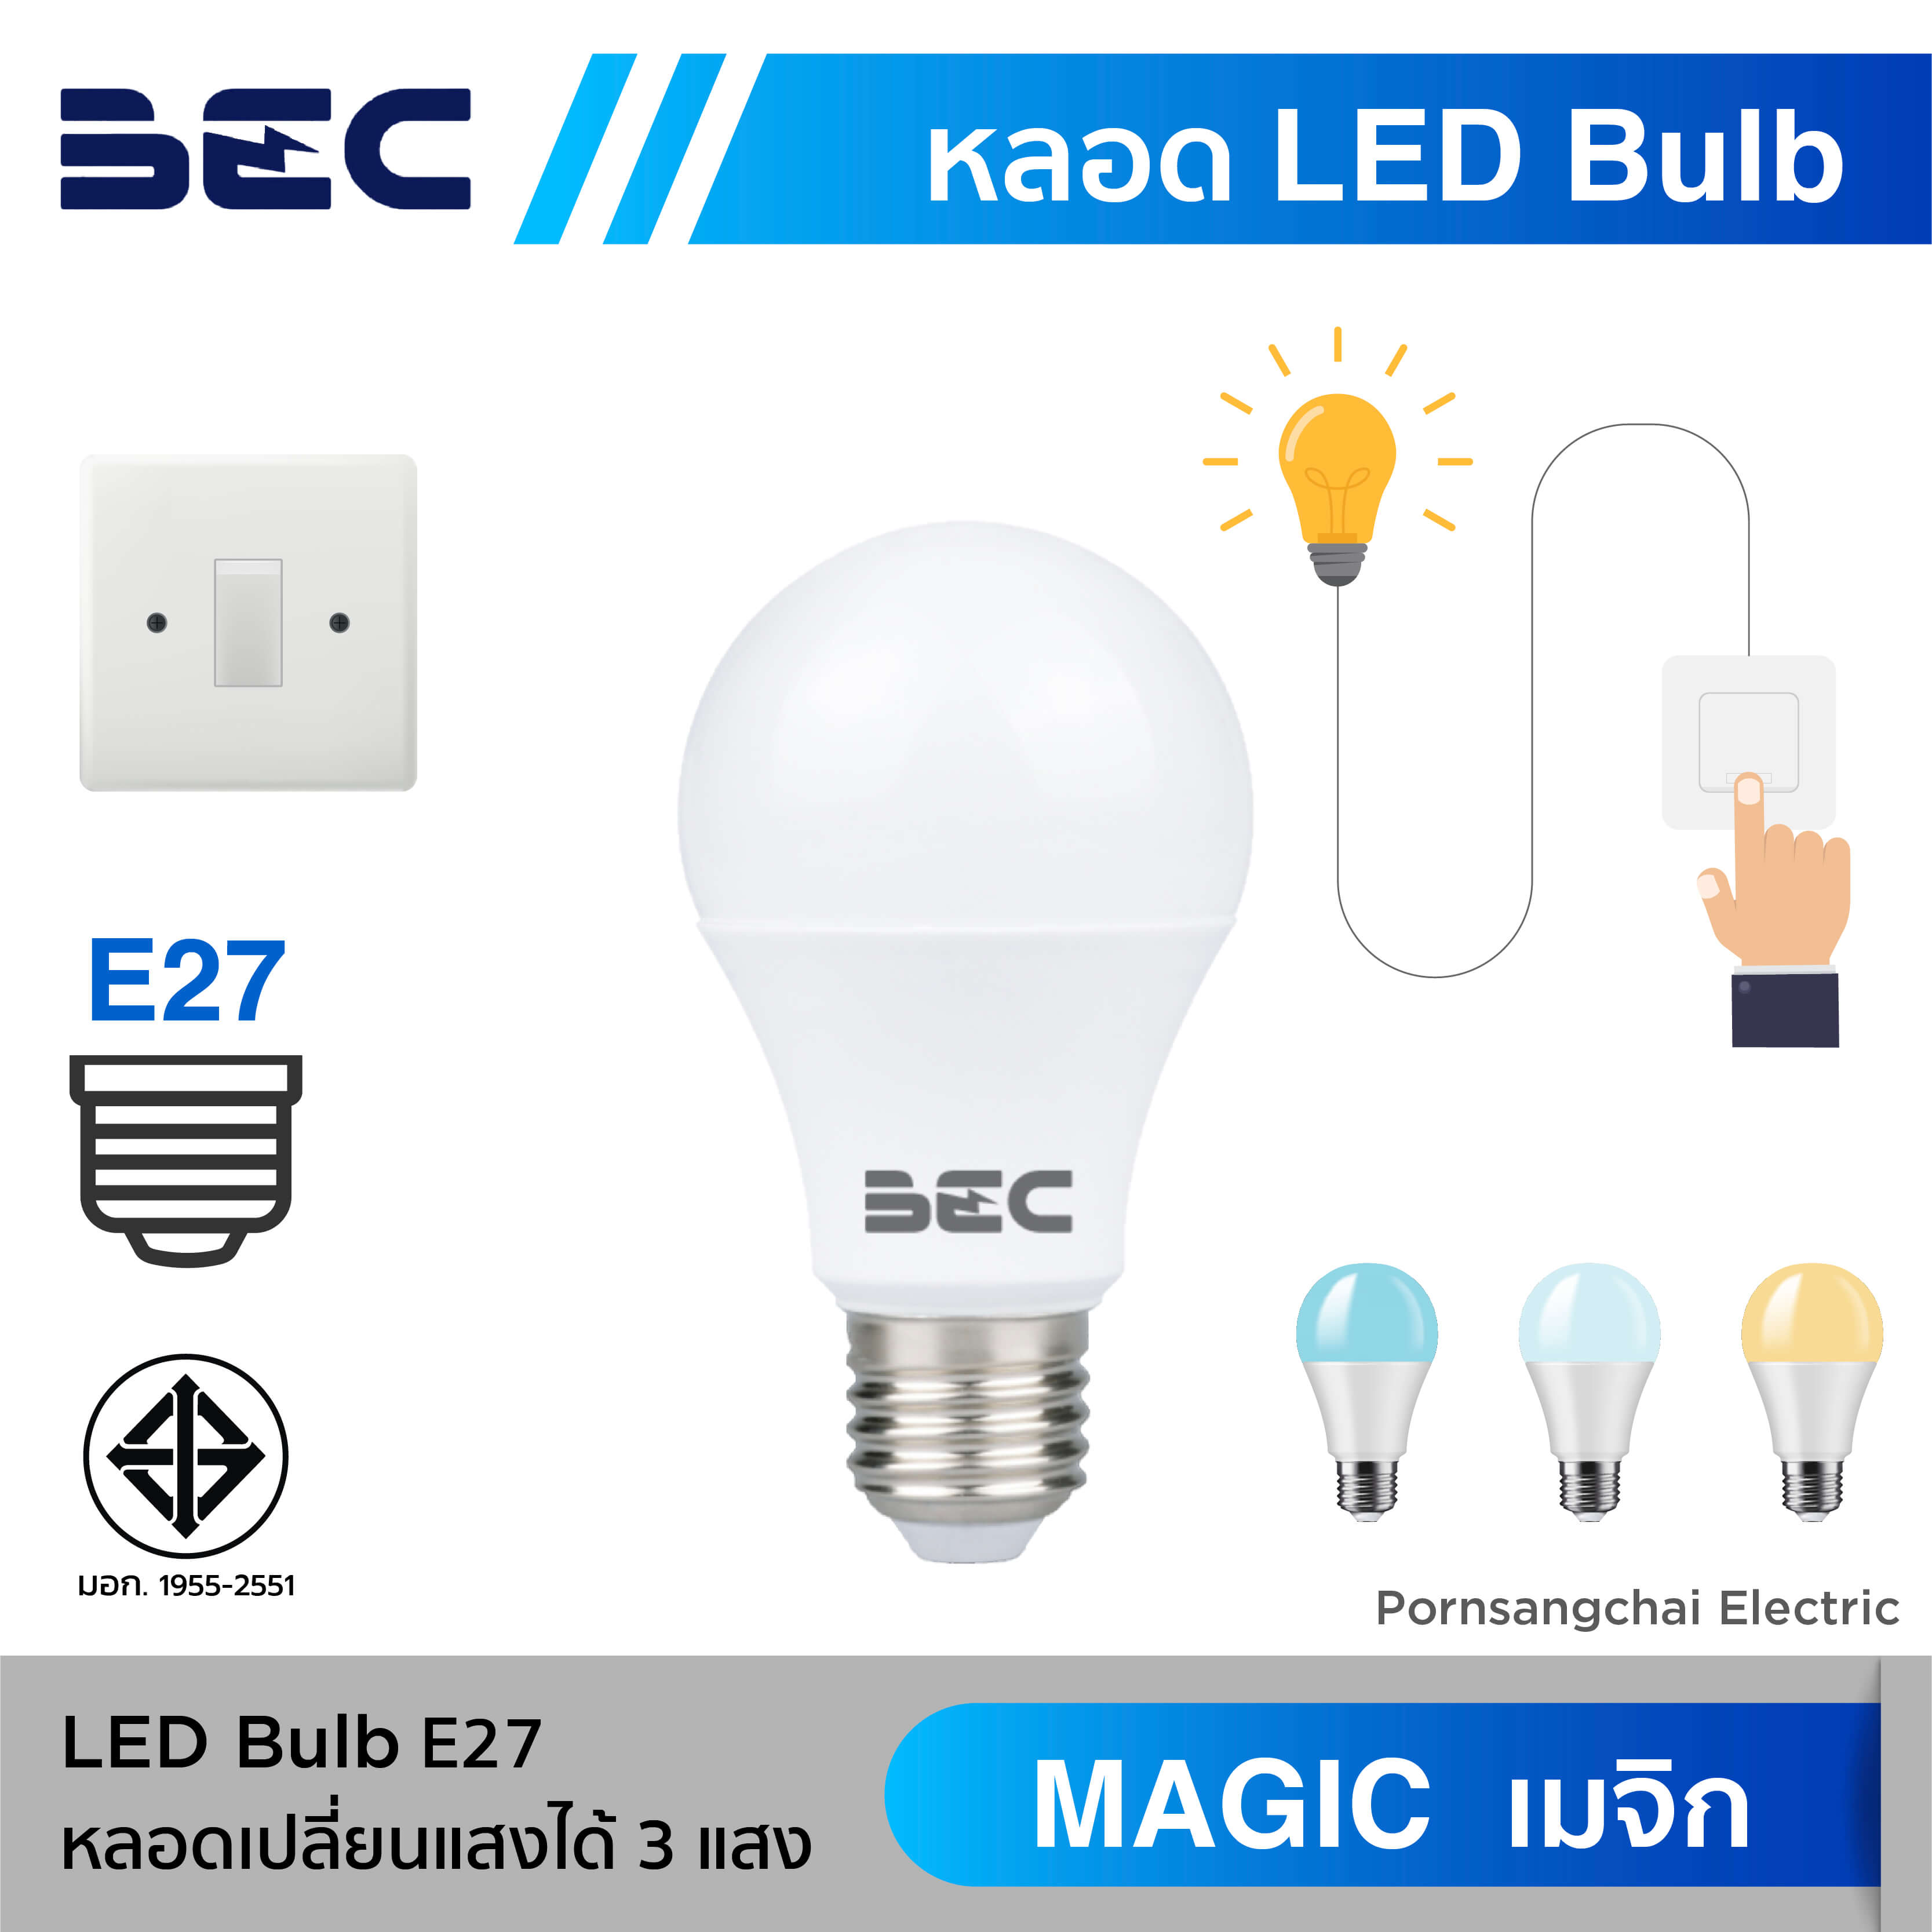 LED Bulb BEC - Magic